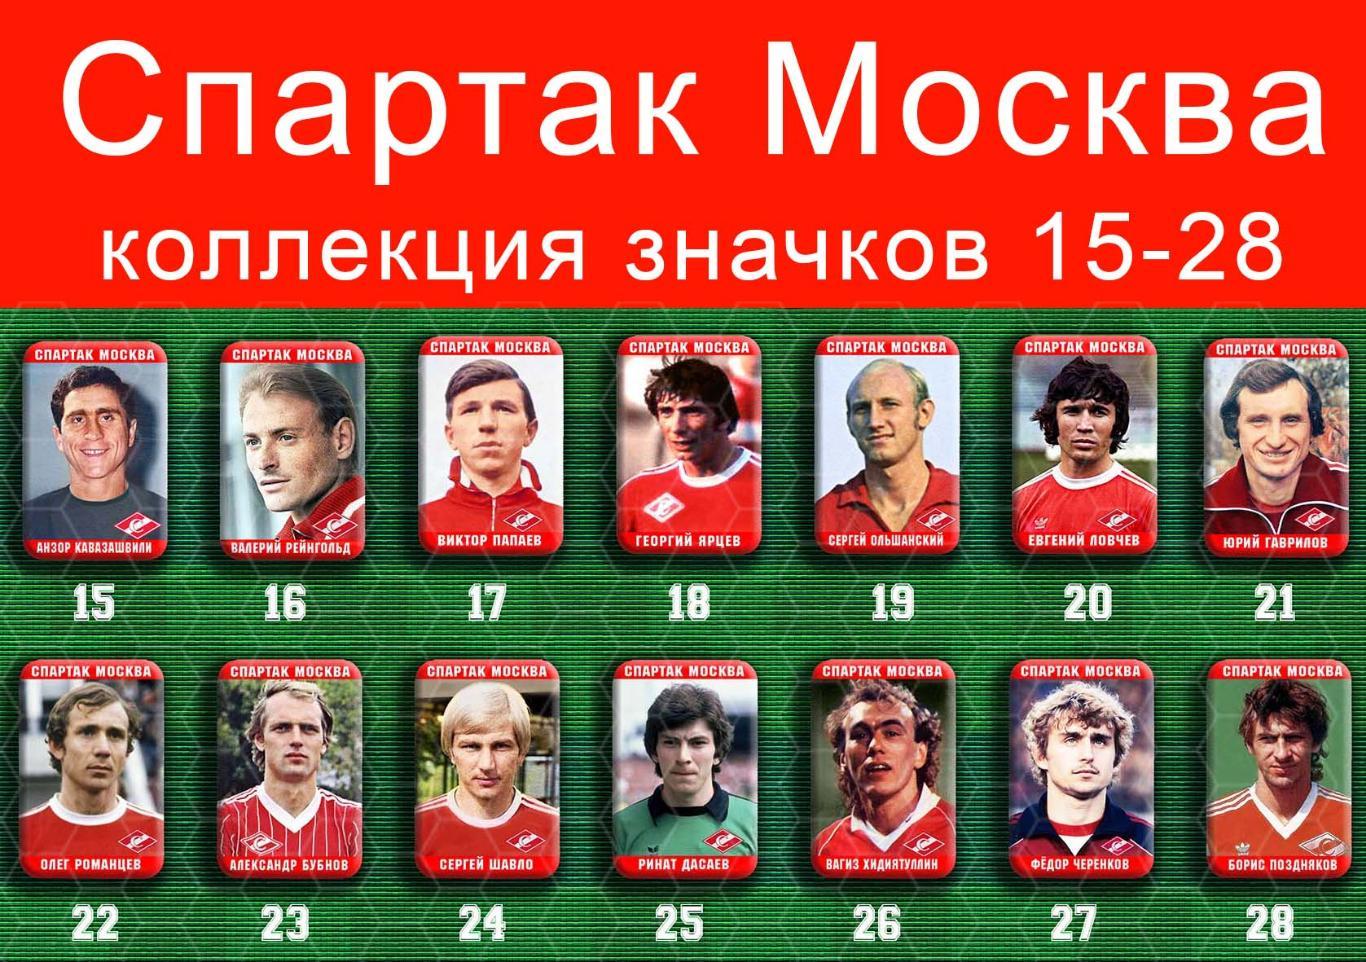 Спартак Москва 159 значков - 15-28